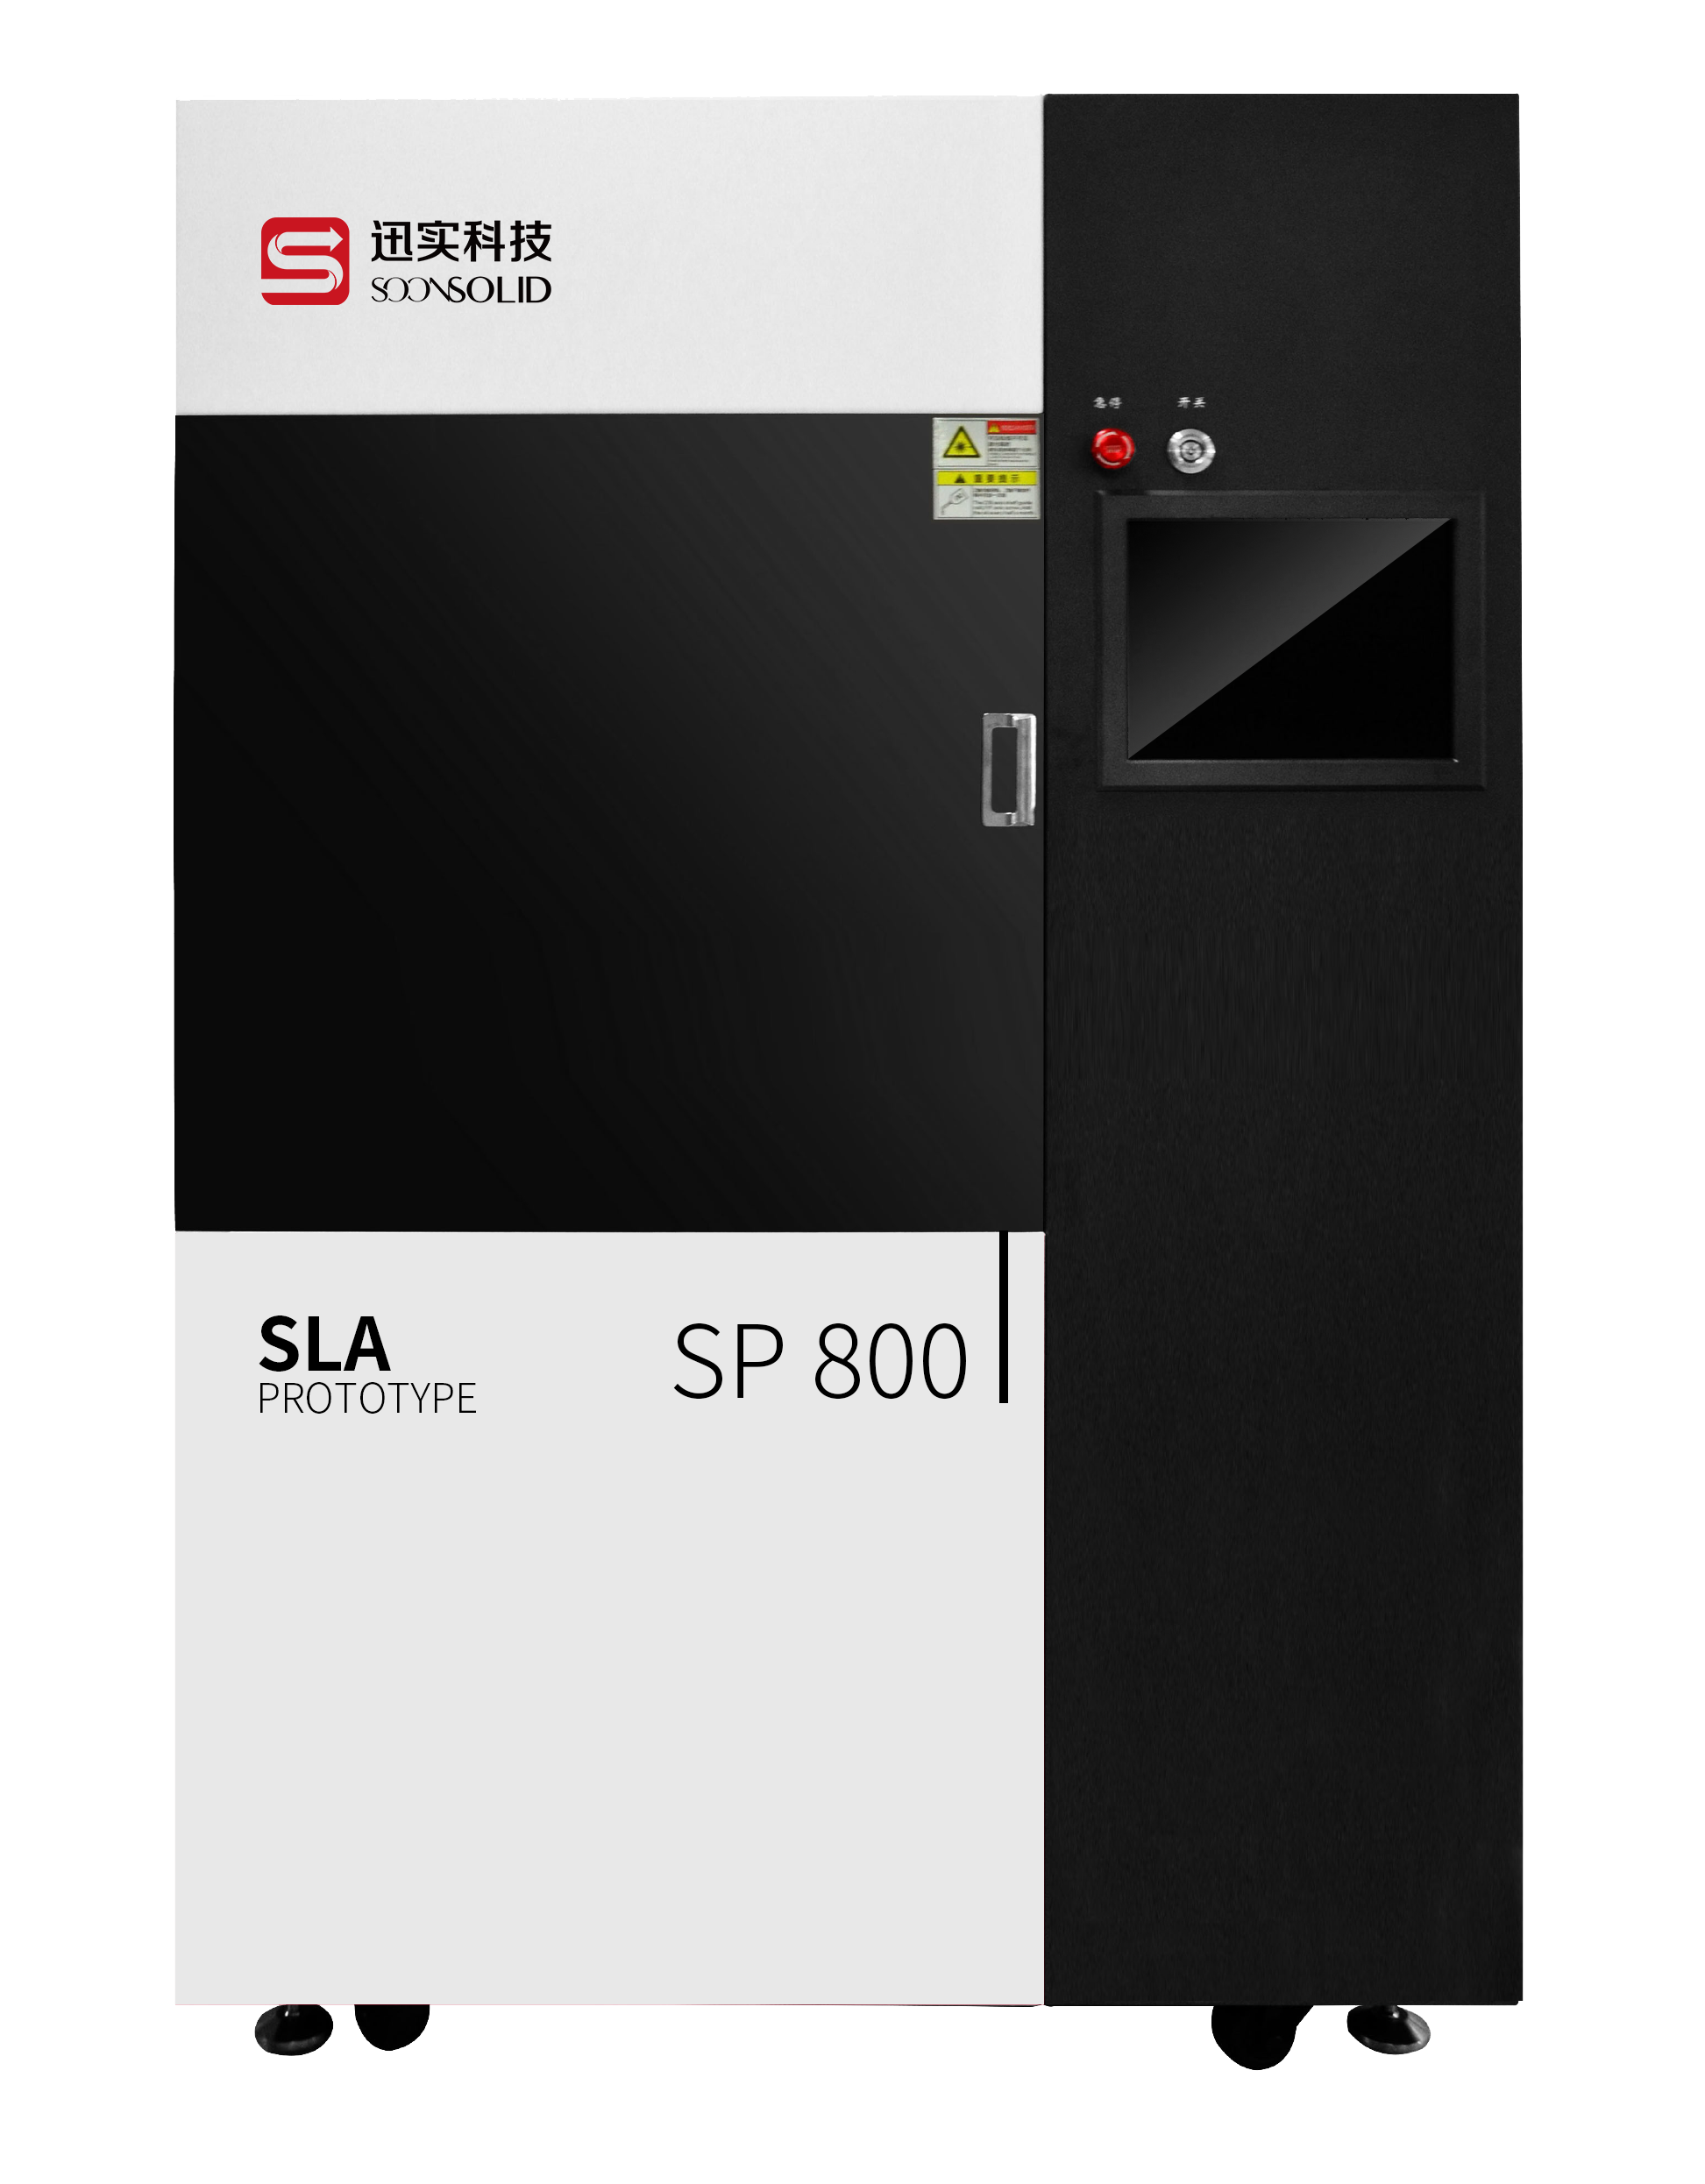 800*800 big industrial 3d printer sla